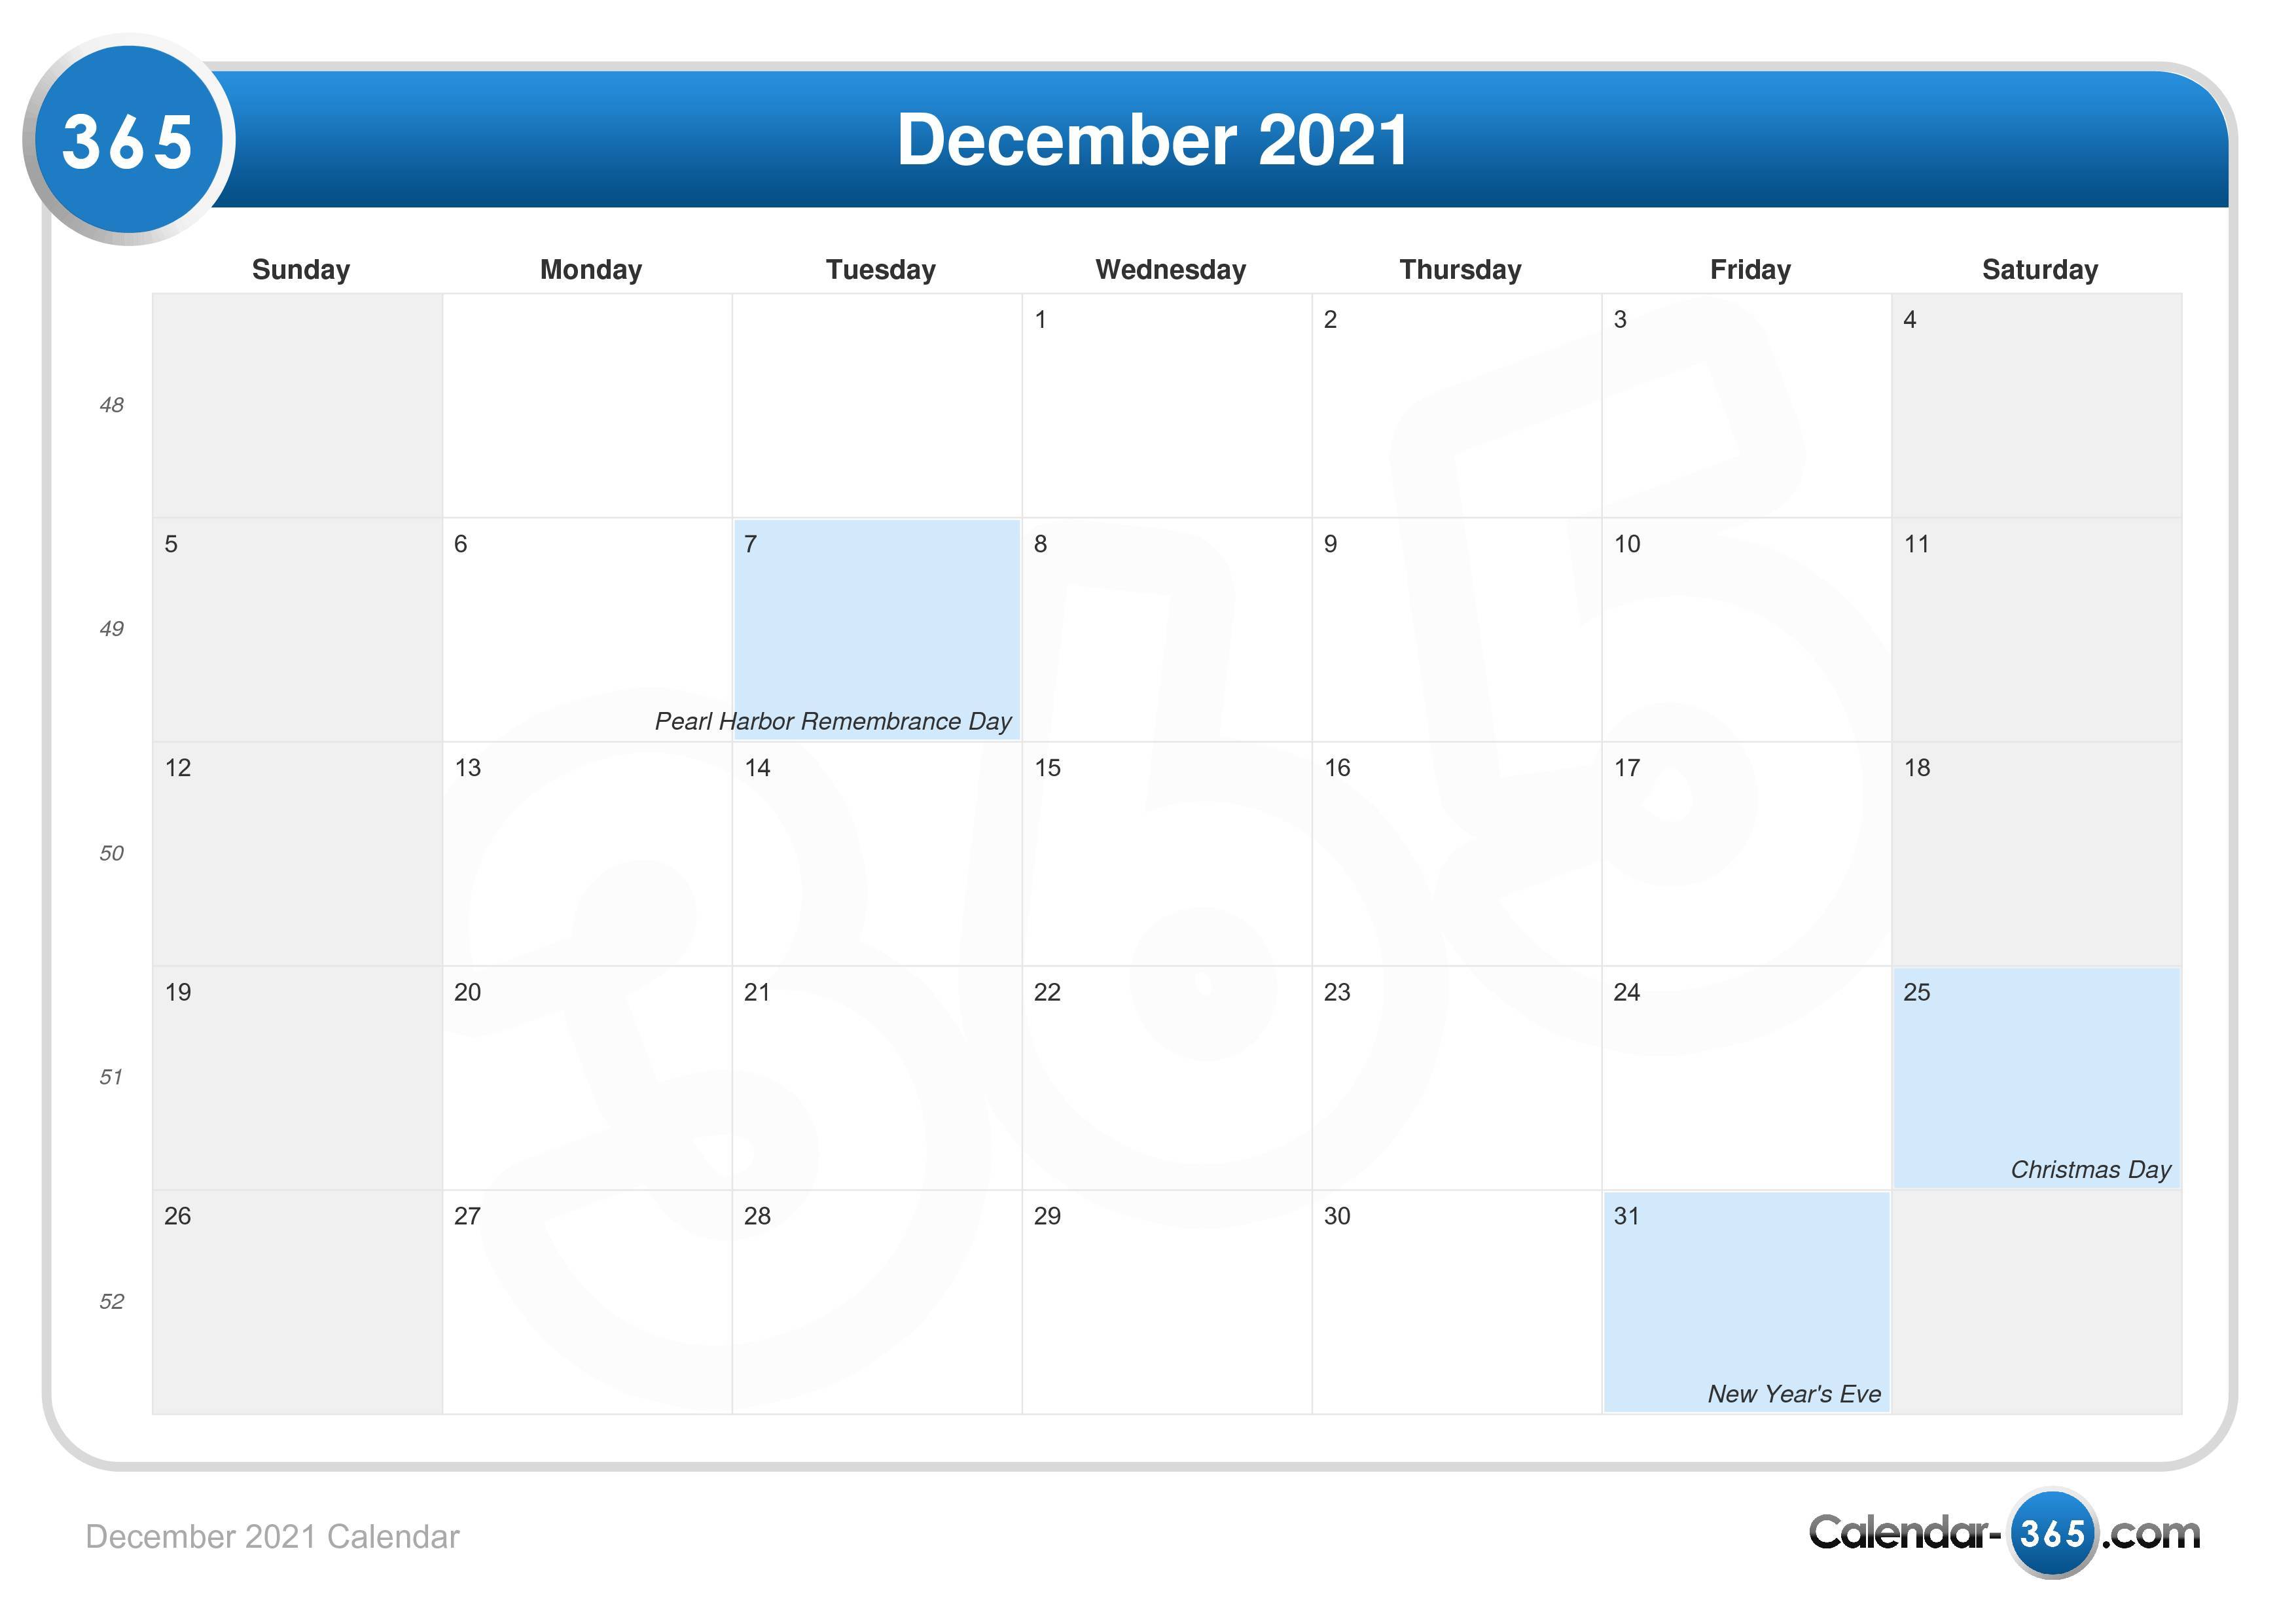 sunset calendar december 2021 December 2021 Calendar sunset calendar december 2021